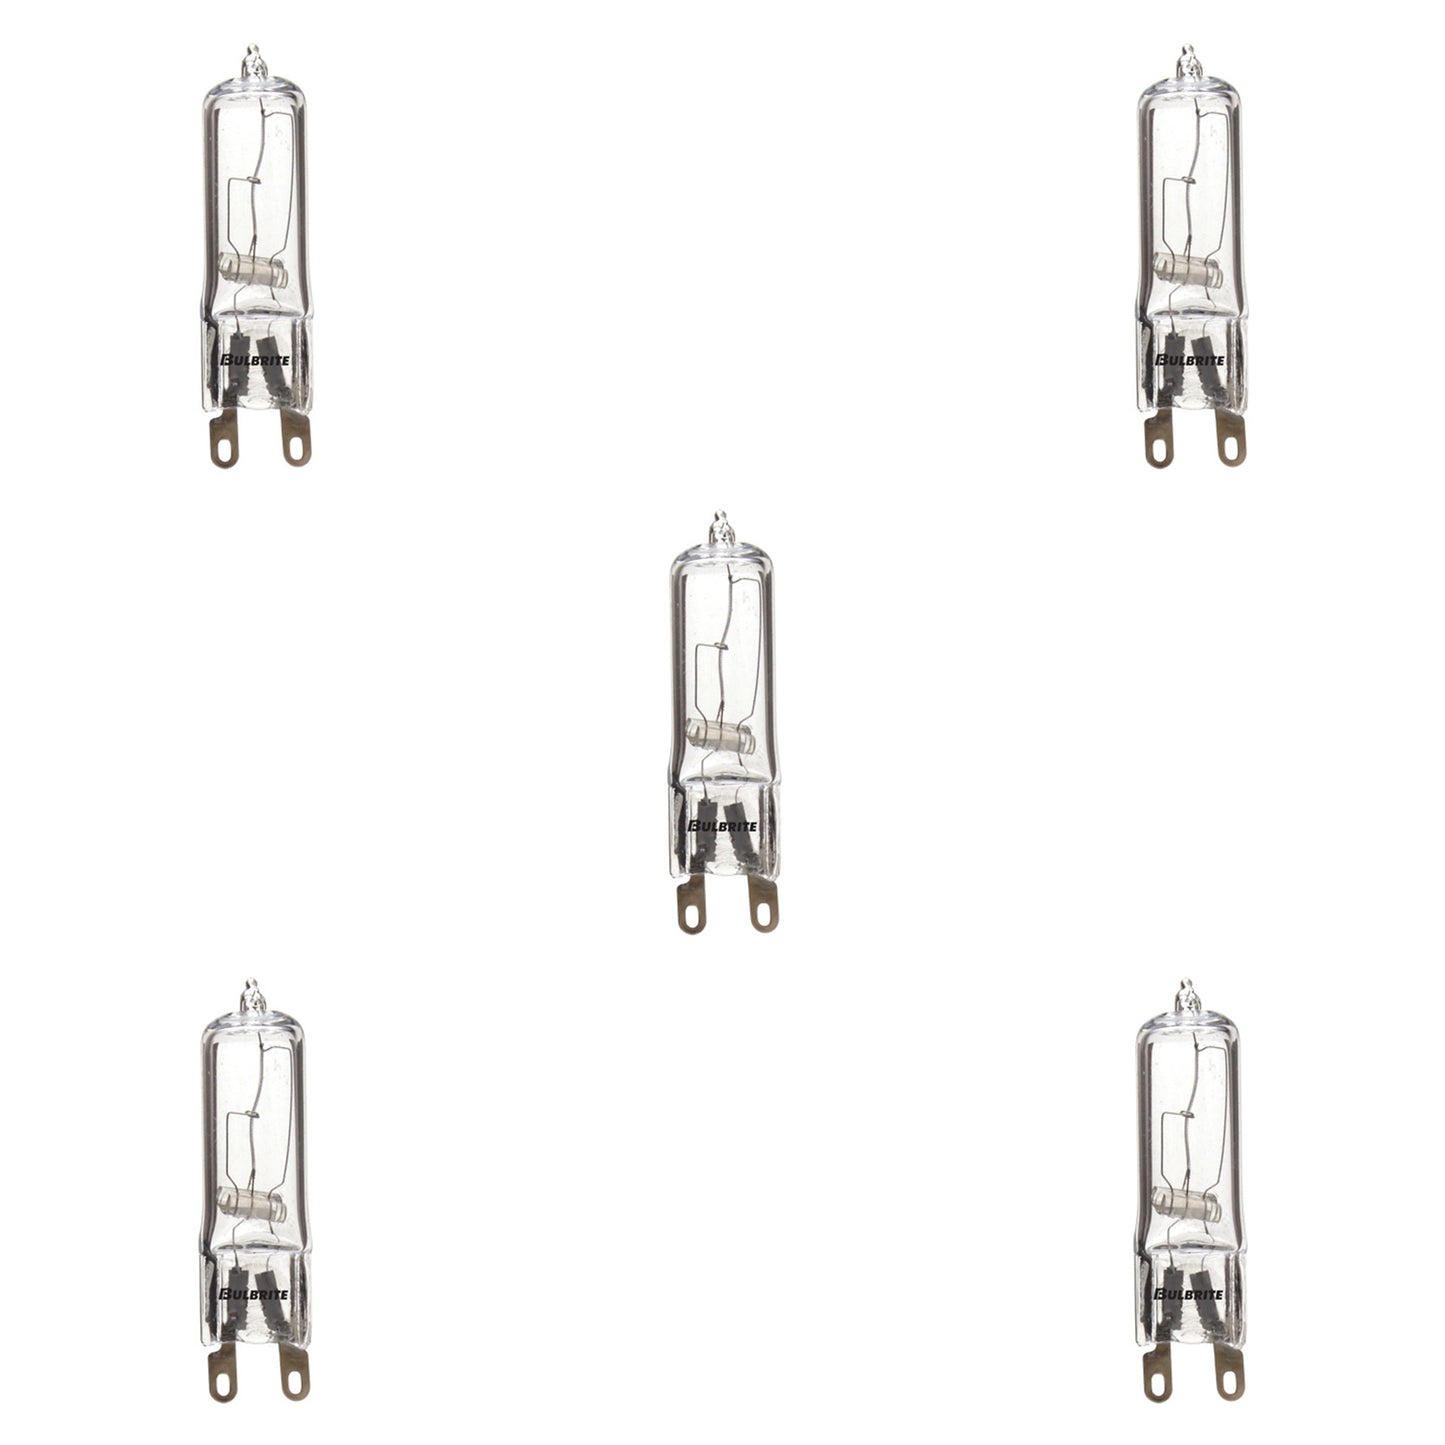 654060 - T4 Clear Halogen Bi-Pin Light Bulb - 60 Watt - 5 Pack